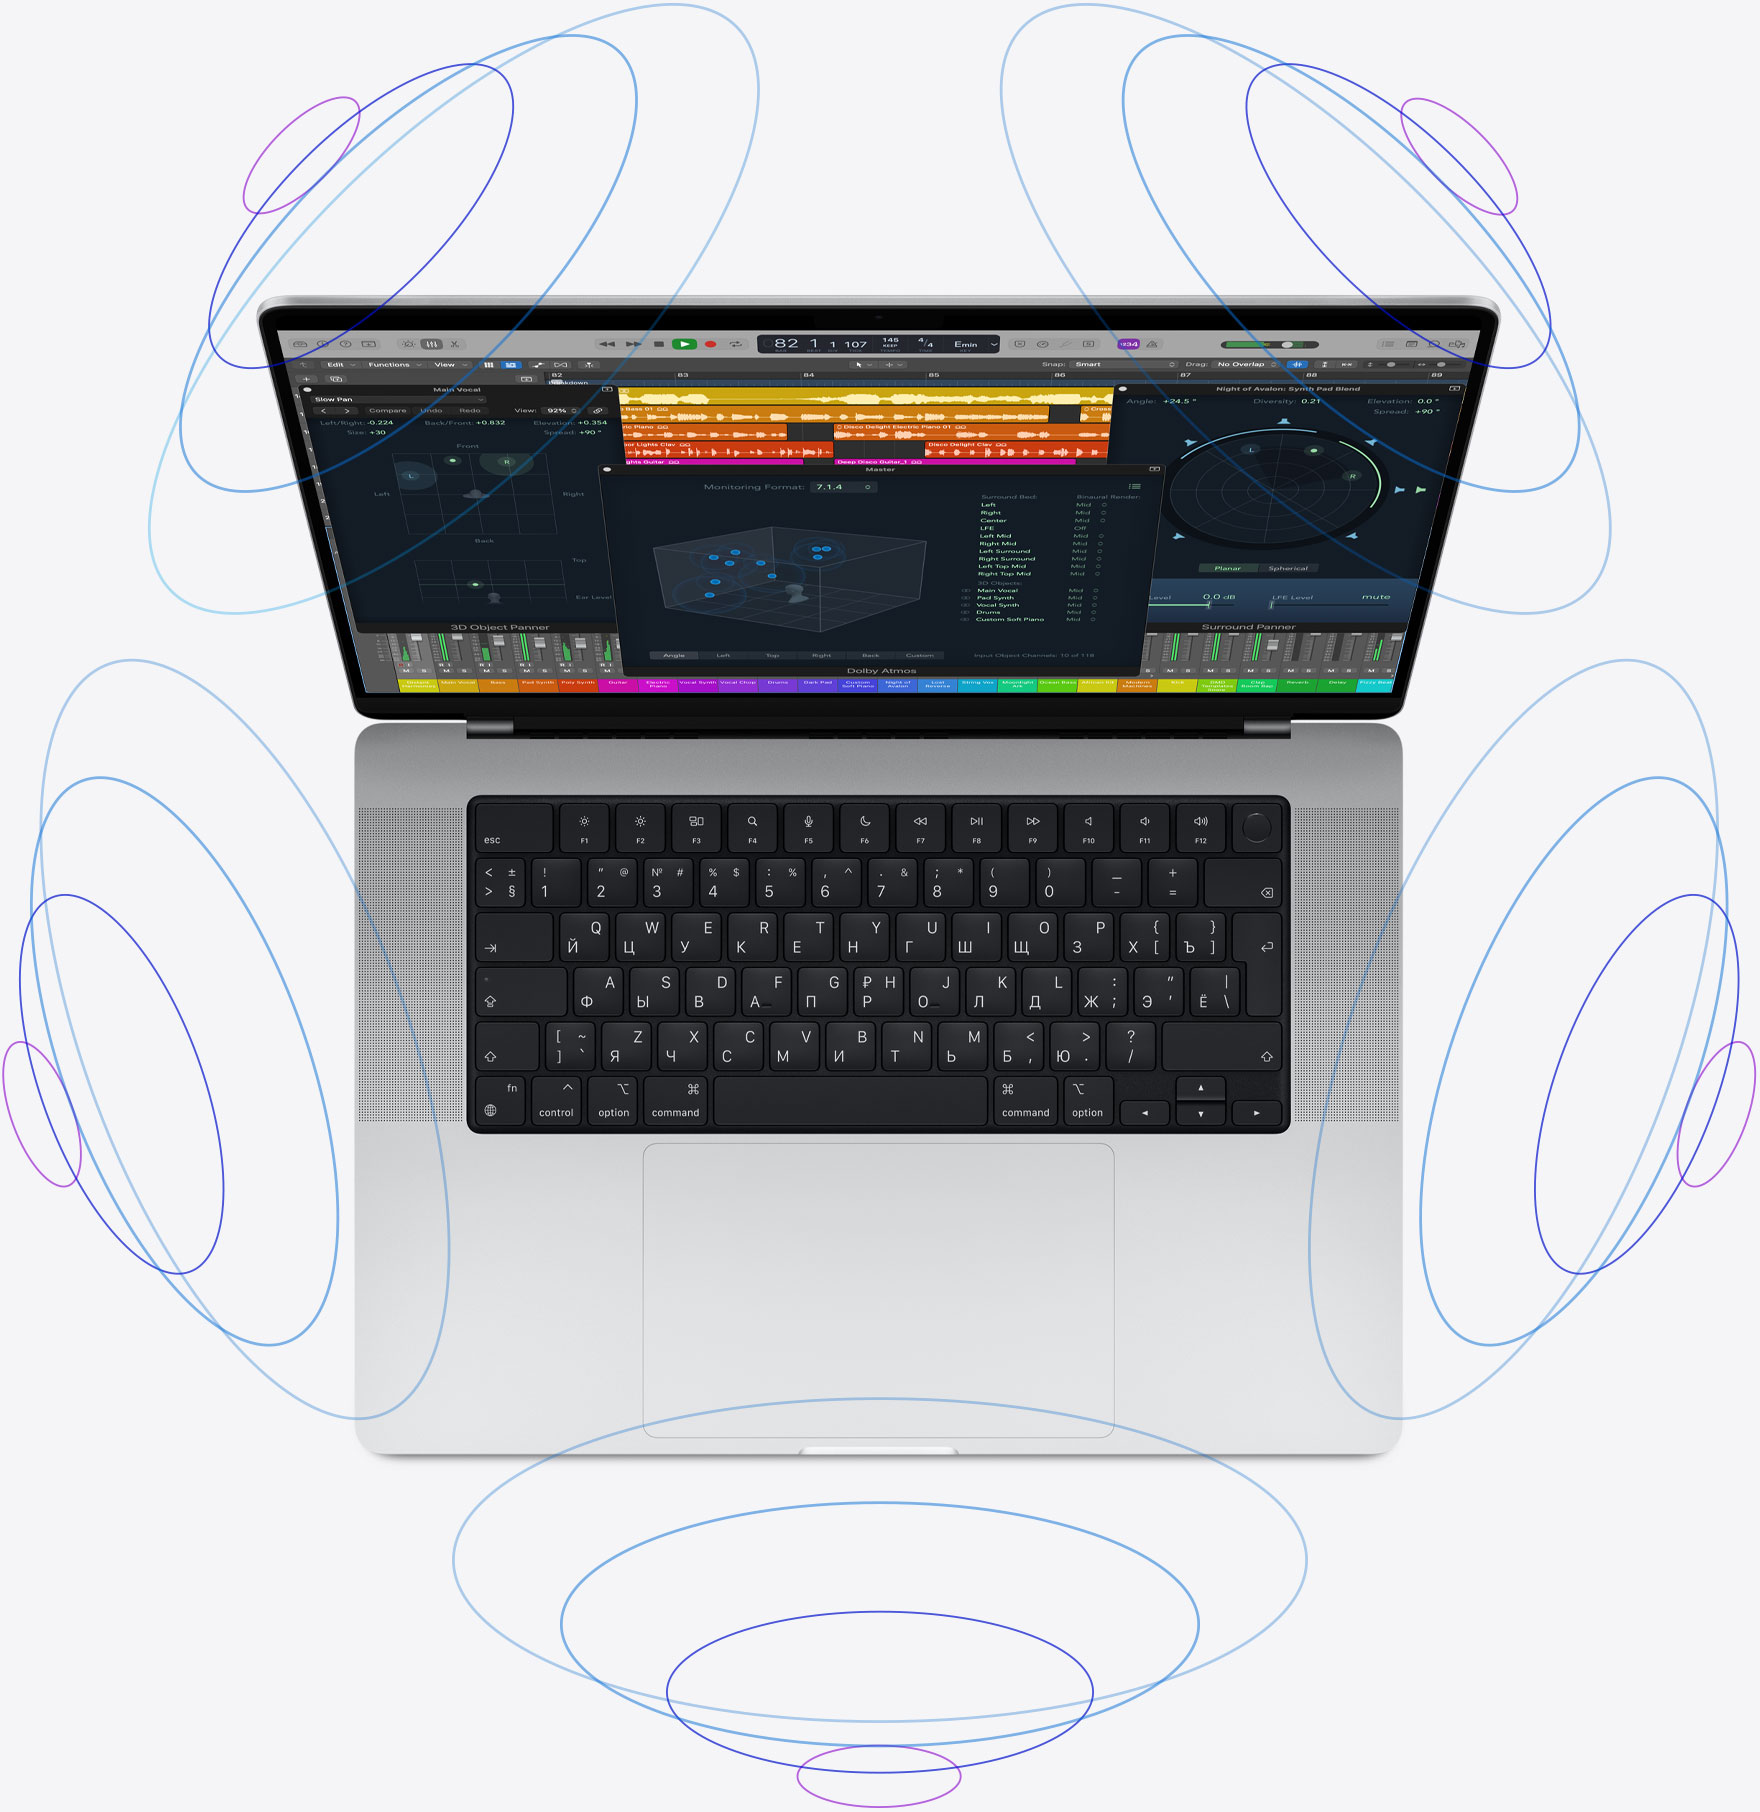 Найпотужніший MacBook Pro та AirPods з просторовим звуком: компанія Apple показала новинки